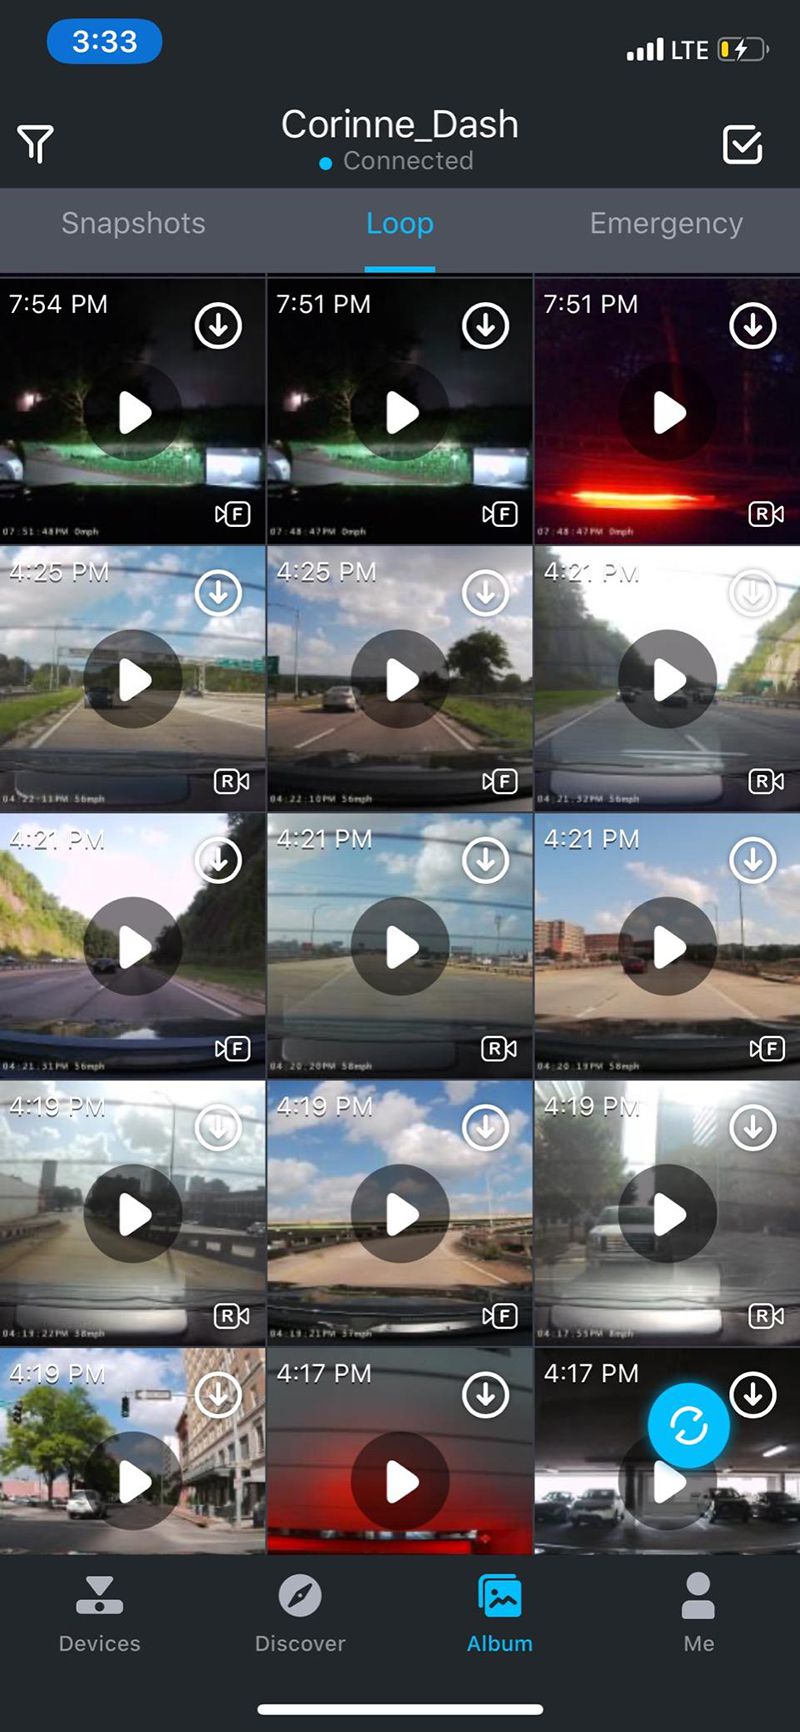 Người dùng có thể dễ dàng chia sẻ hình ảnh và video trong chuyến đi lên MXH